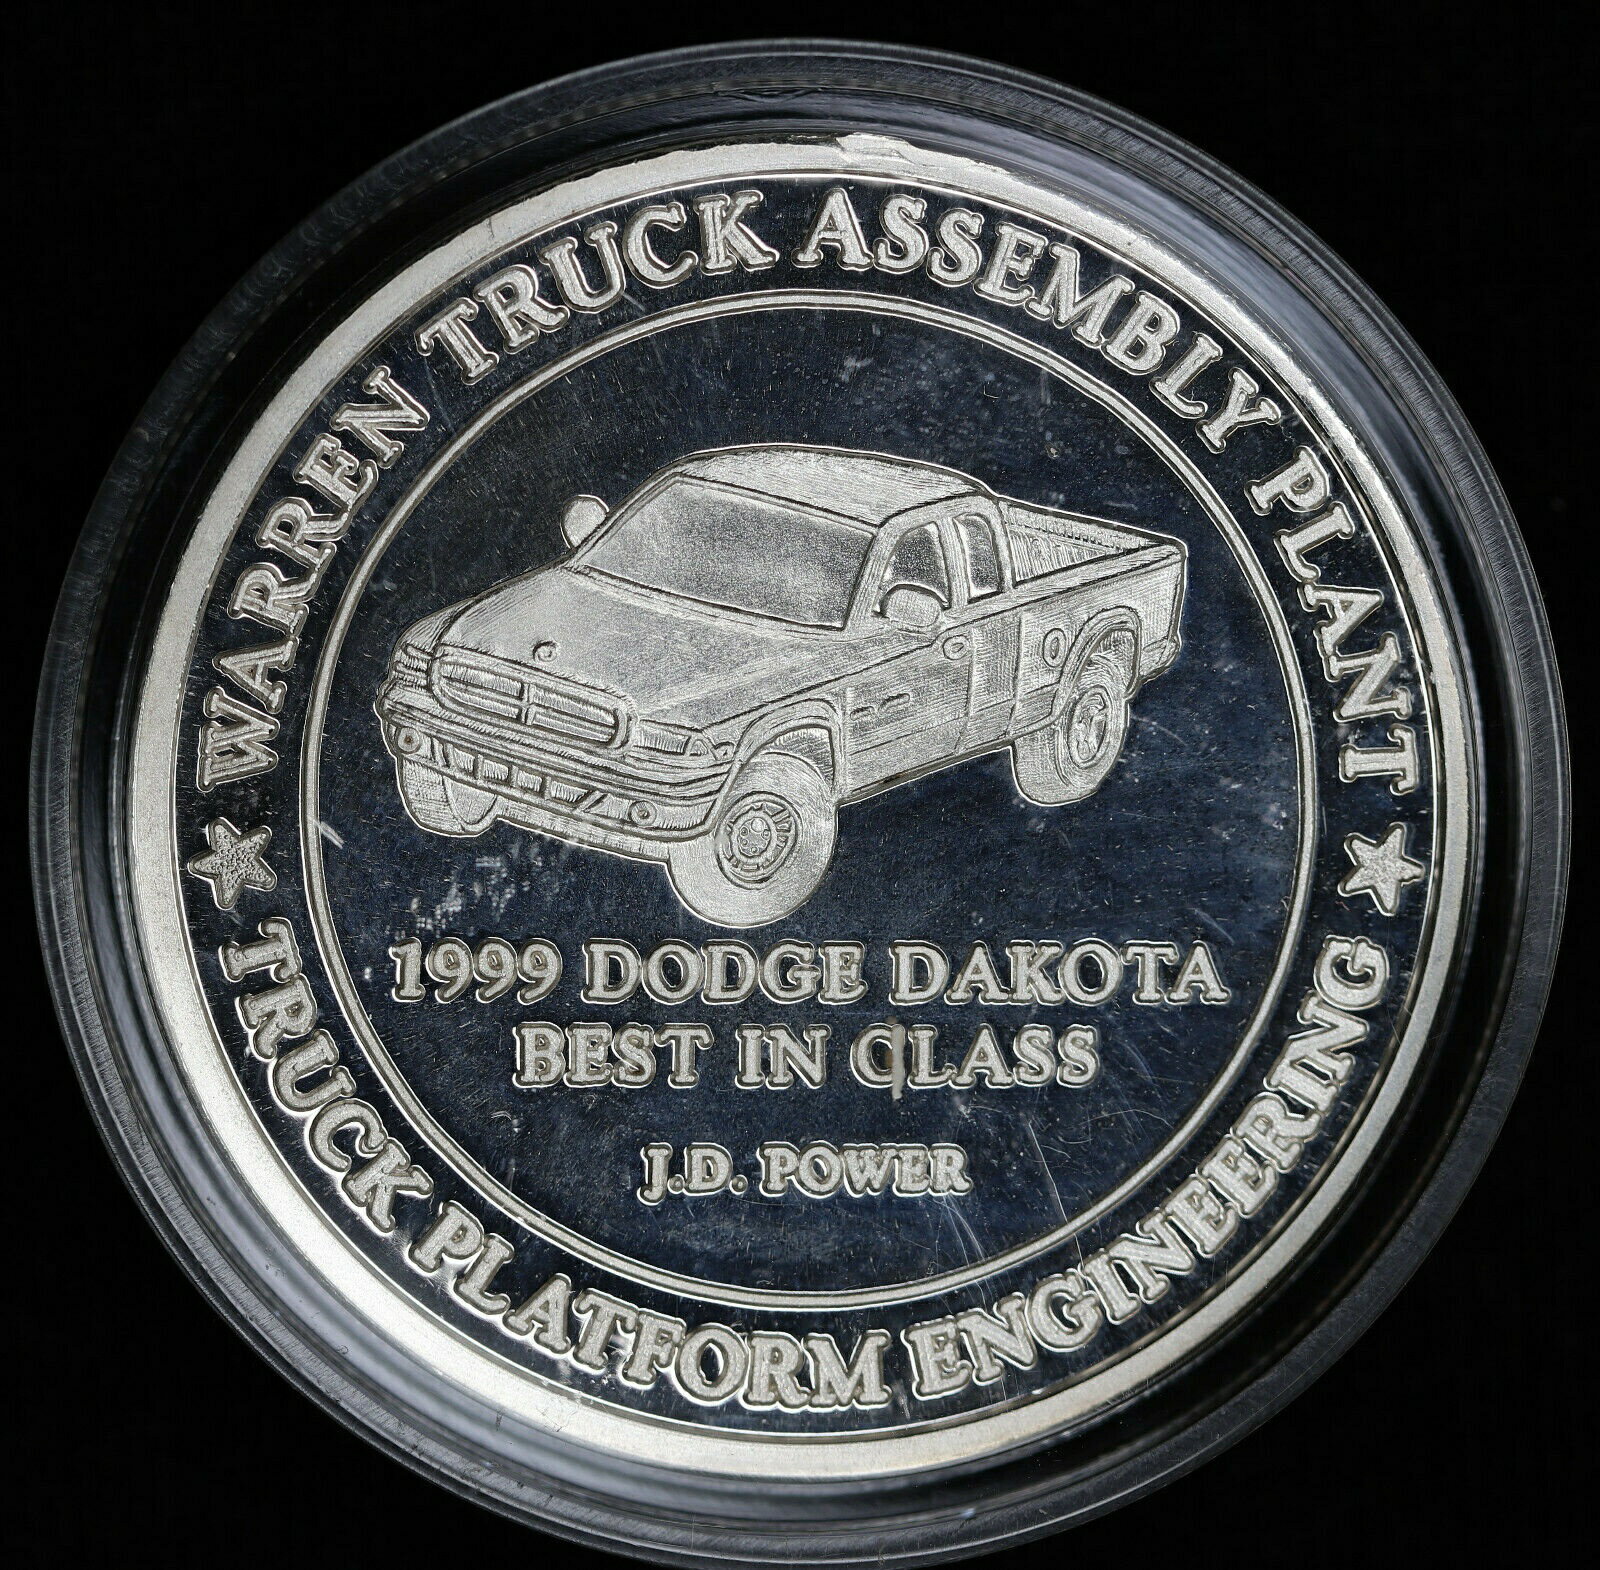 【極美品/品質保証書付】 アンティークコイン コイン 金貨 銀貨 [送料無料] 1999 Dodge Dakota Warren Michigan Truck Assembly Plant Silver Art Round JD Power